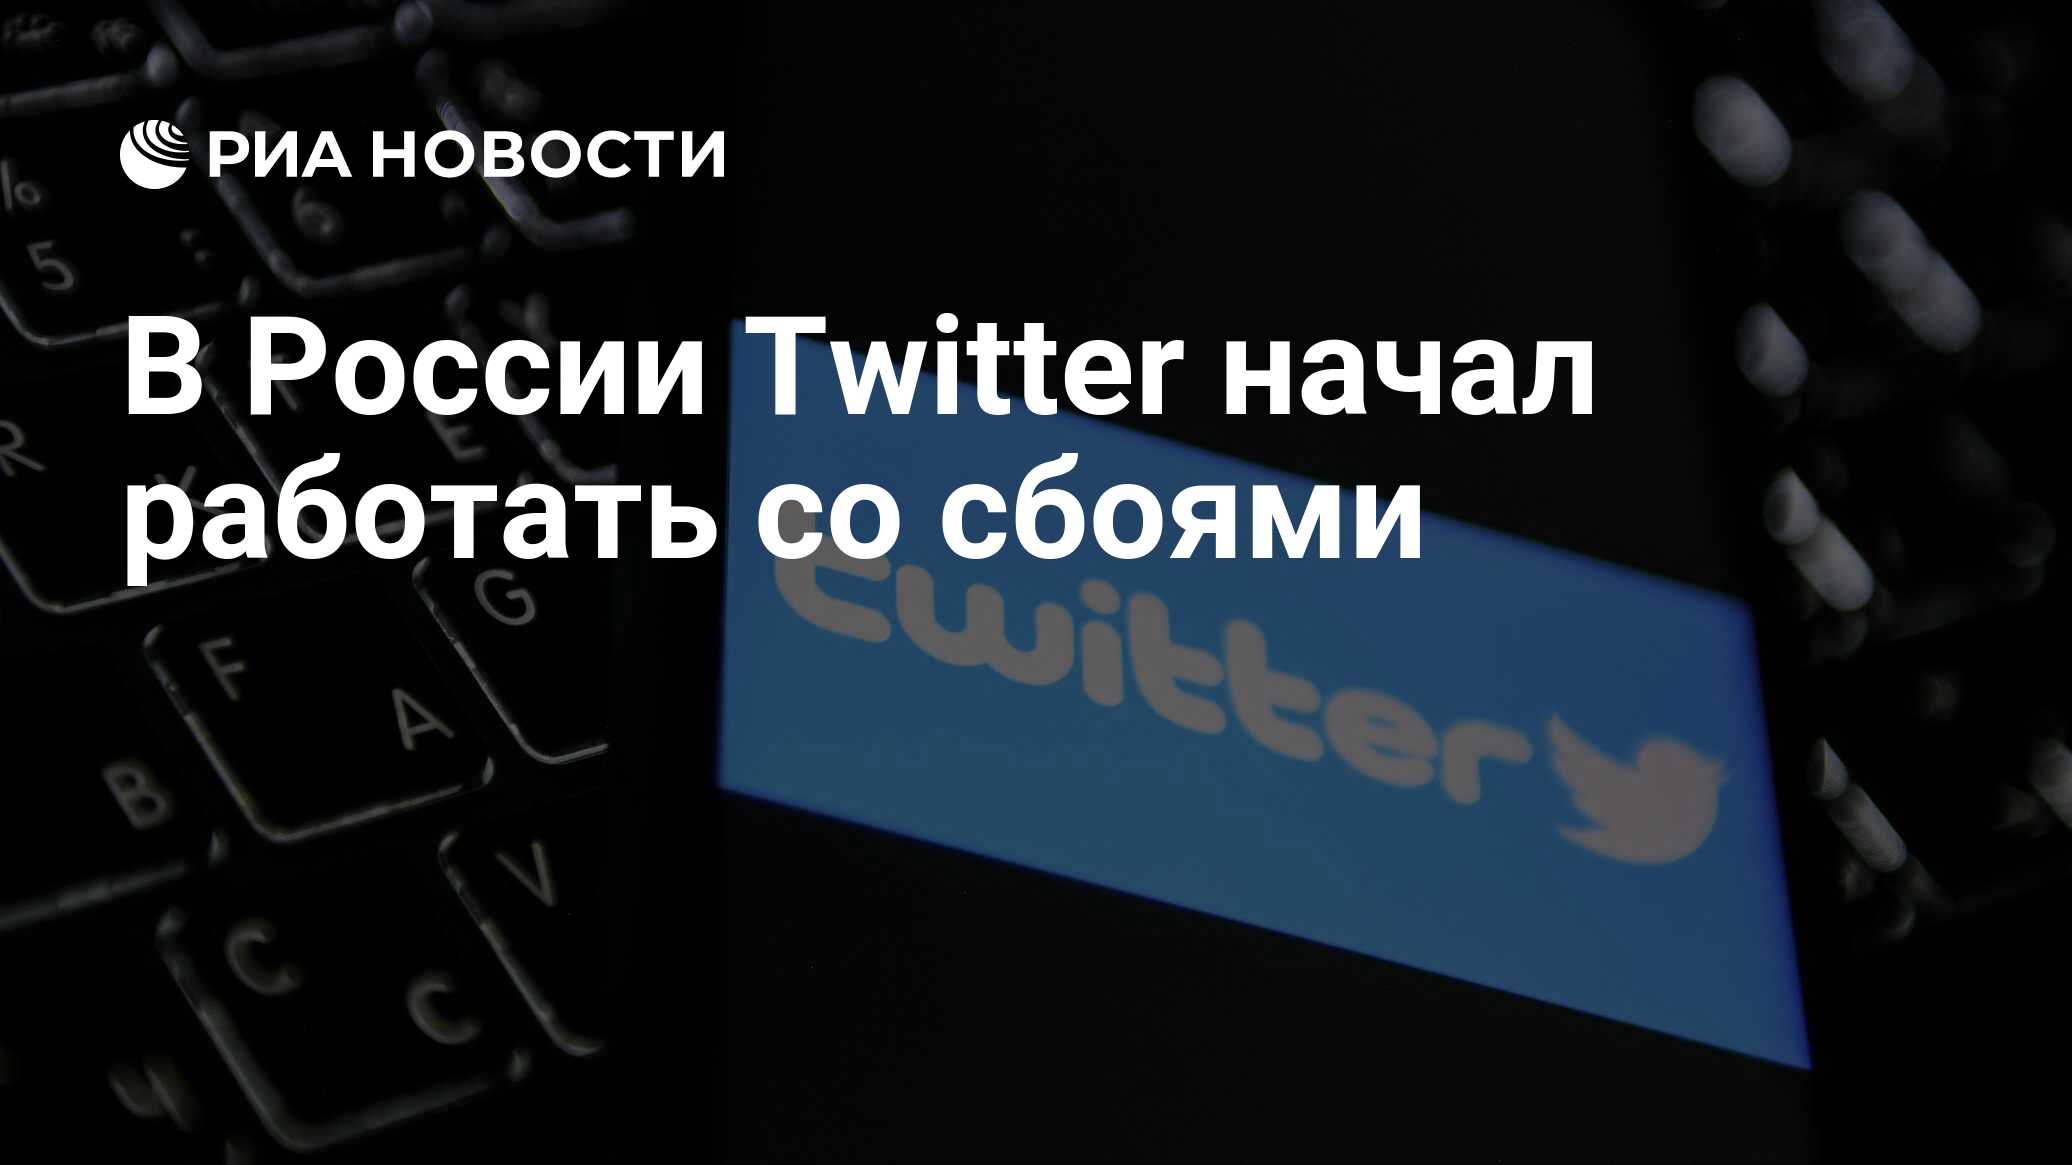 Телеграмм сегодня не работает 27 февраля. Твиттер в России работает.